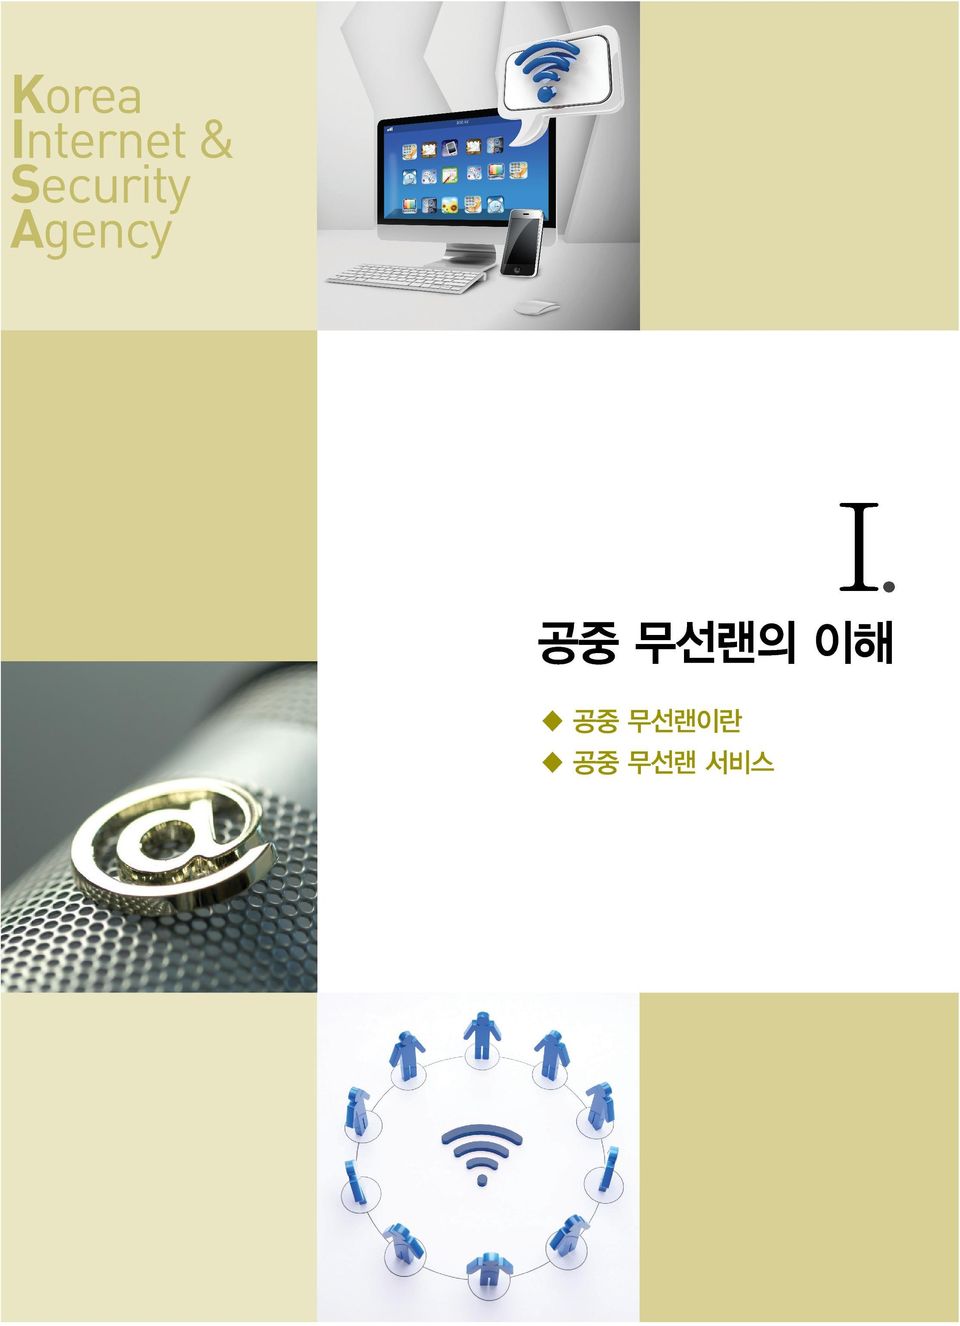 2 Korea Internet & Security